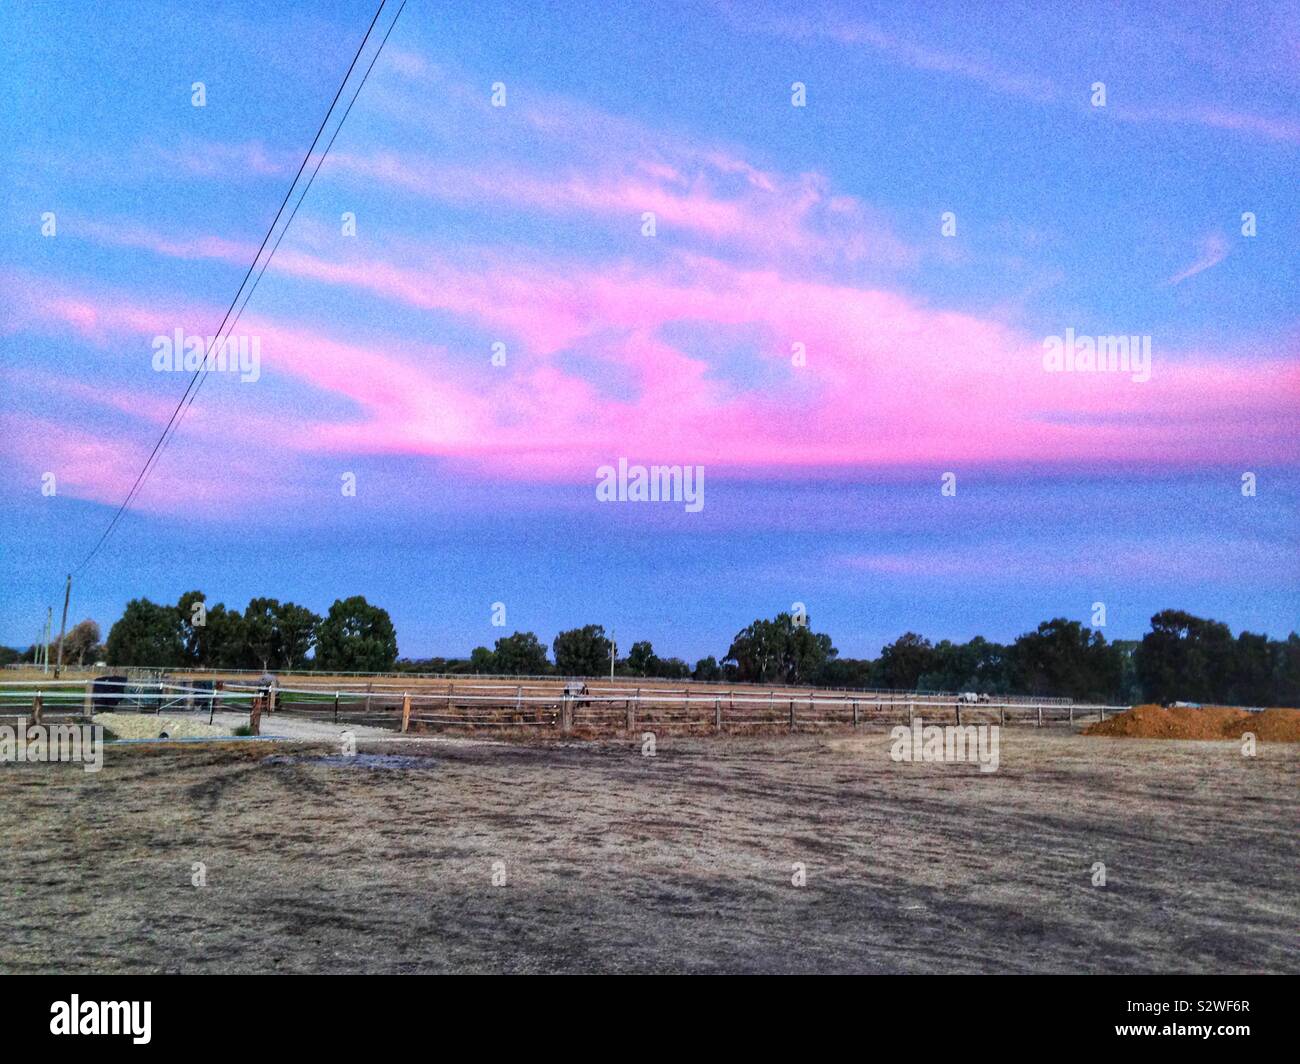 Pink Sky in Australia Stock Photo